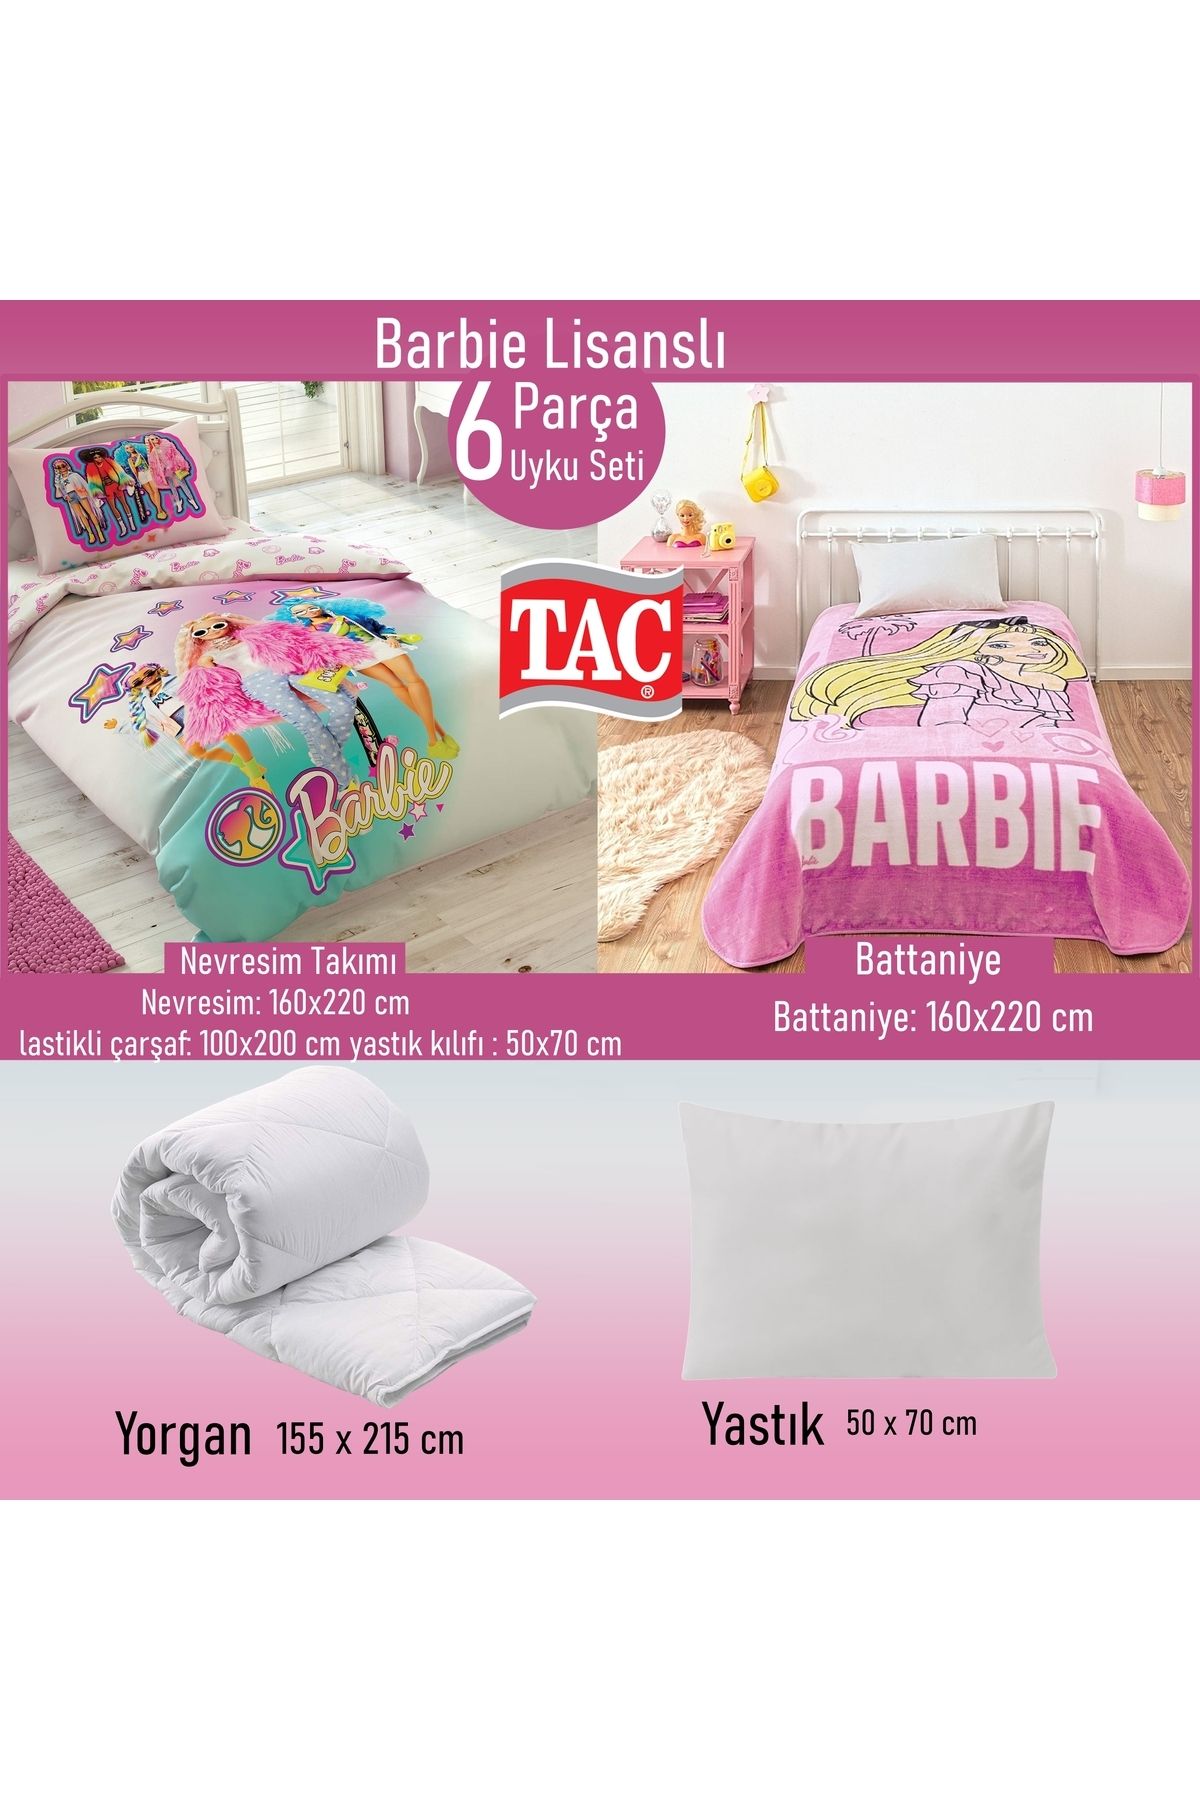 Taç Barbie Lisanslı 6 Parça Uyku Seti Yastık Hediyeli